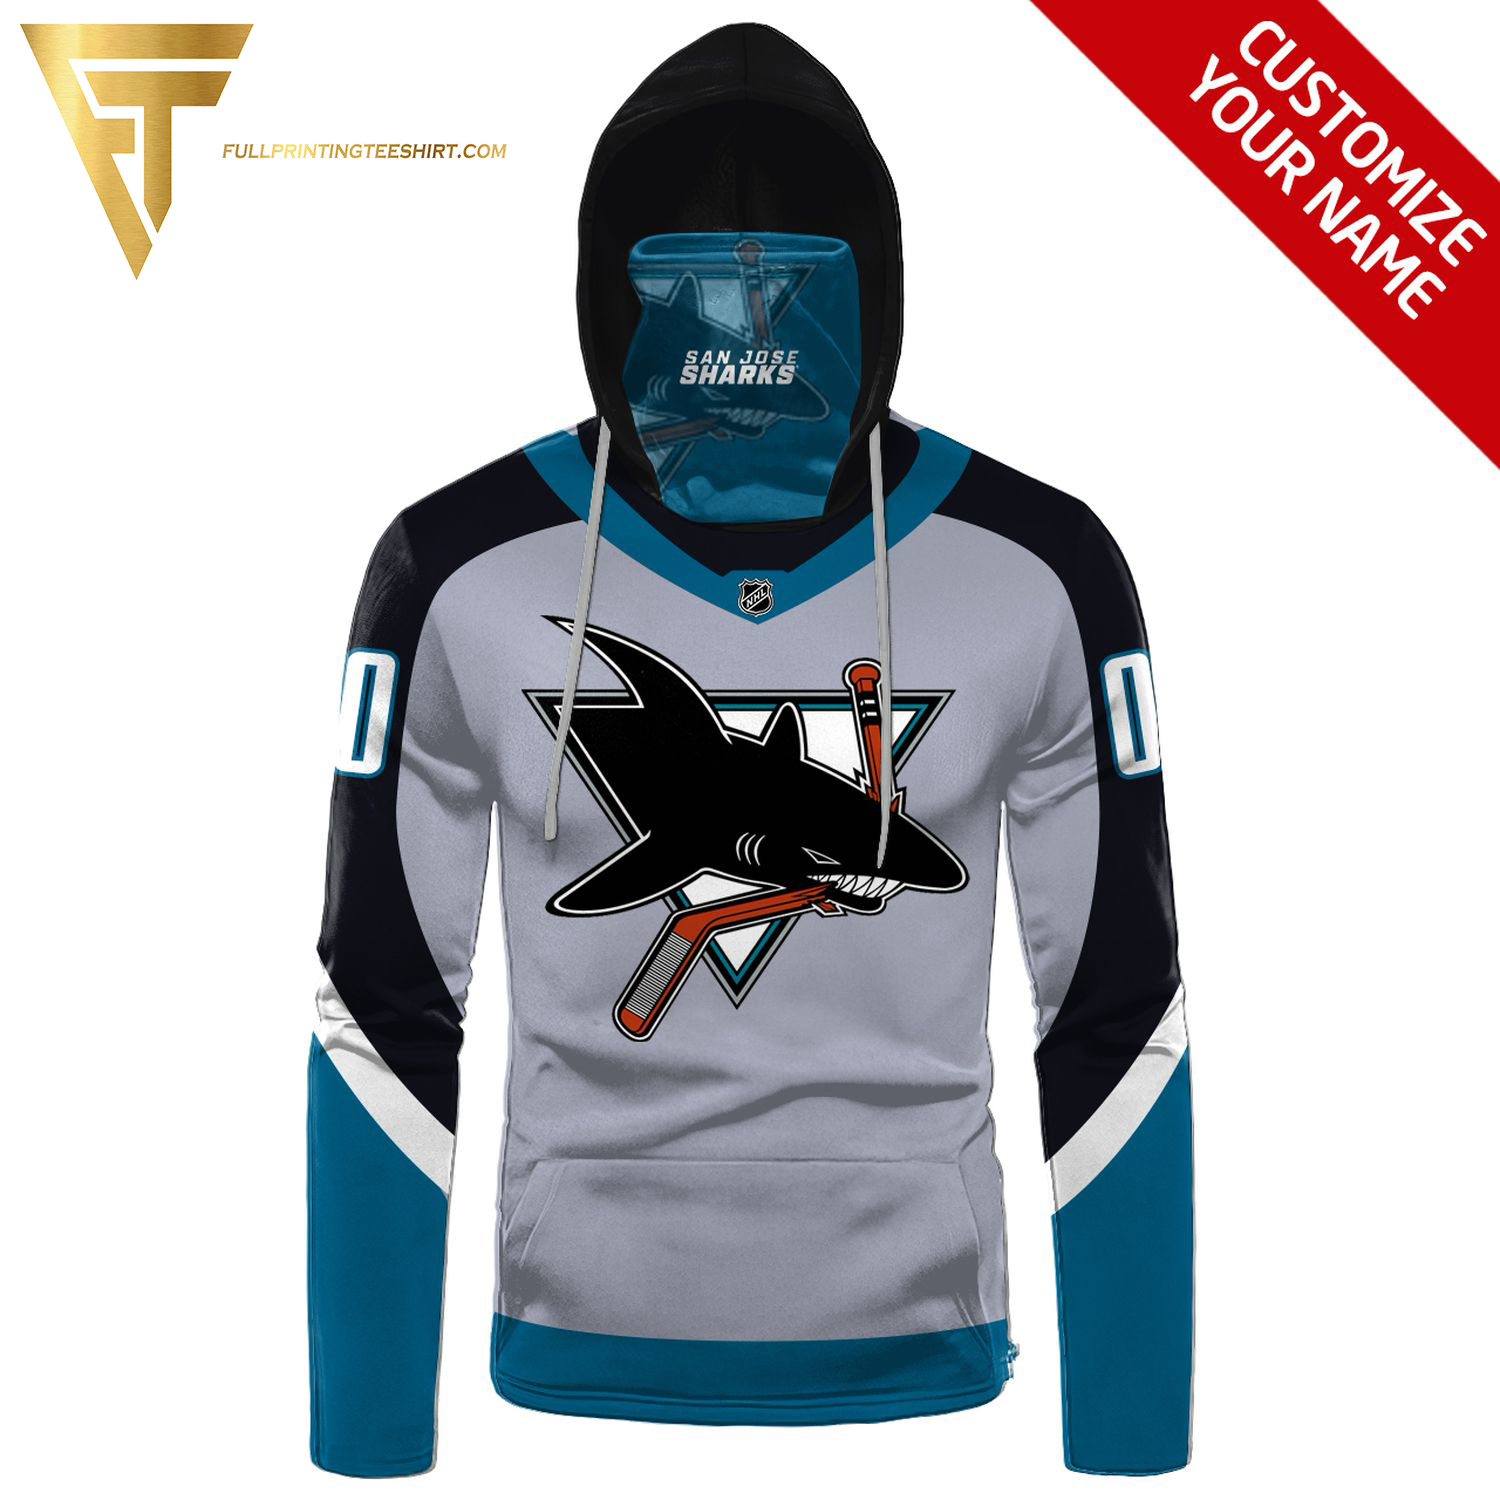 Custom The San Jose Sharks NHL Full Print Shirt